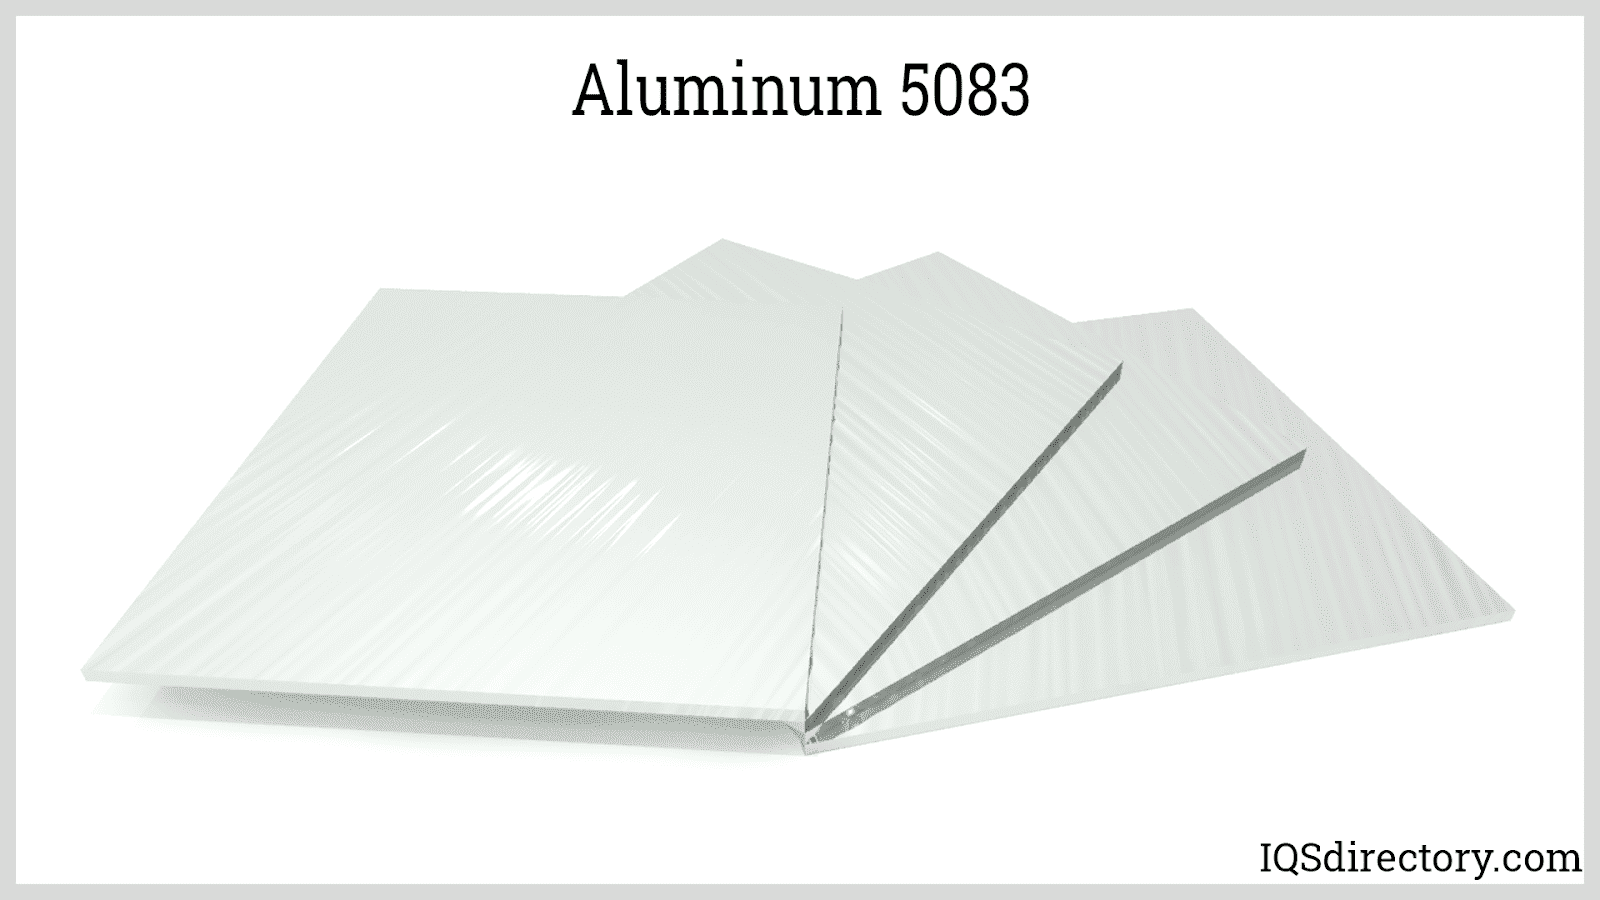 Aluminum 5083